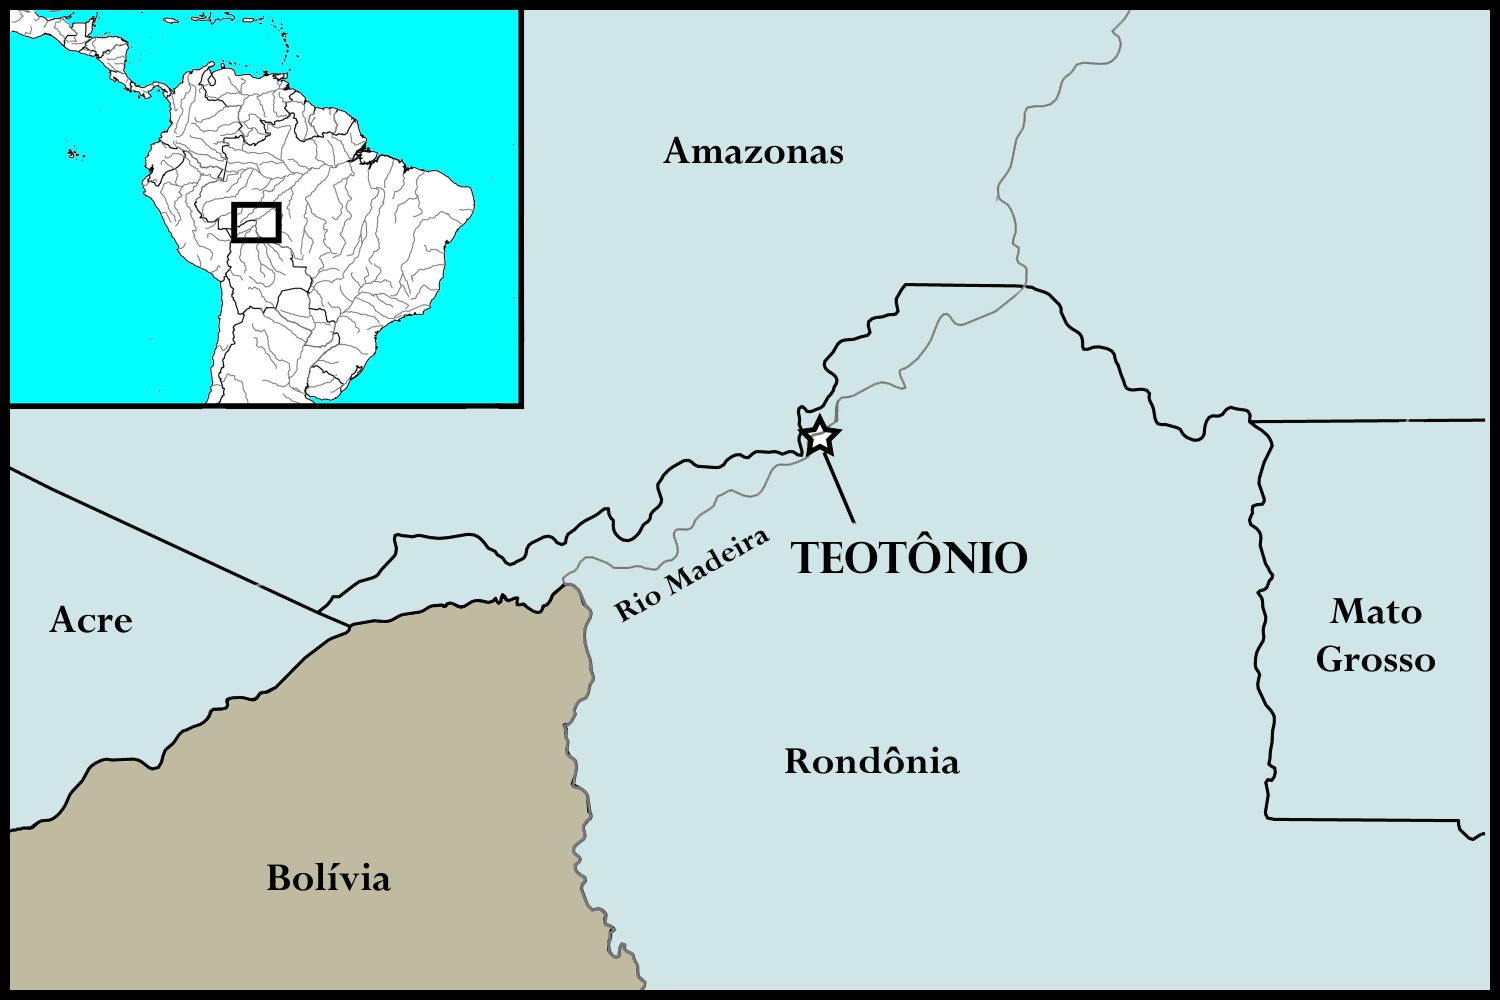 Localização do sítio Teotônio no sudoeste da Amazônia (Fonte: modificado a partir do trabalho dos autores)